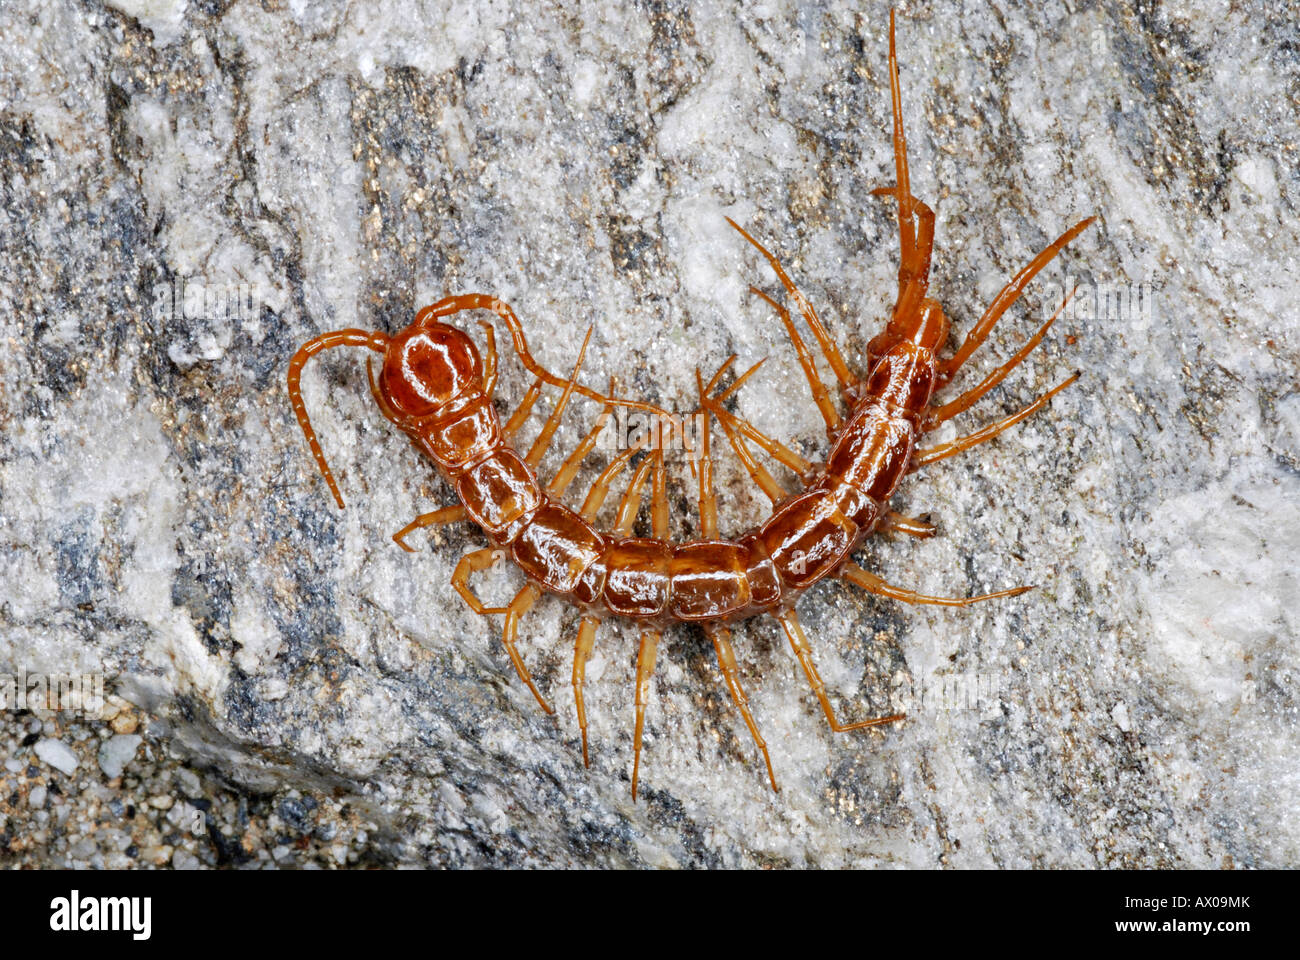 Centipede Otostigmus scabricauda (Chilopoda: Scolopendromorpha). Centipedes are terrestrial arthropods belonging to the class. Stock Photo